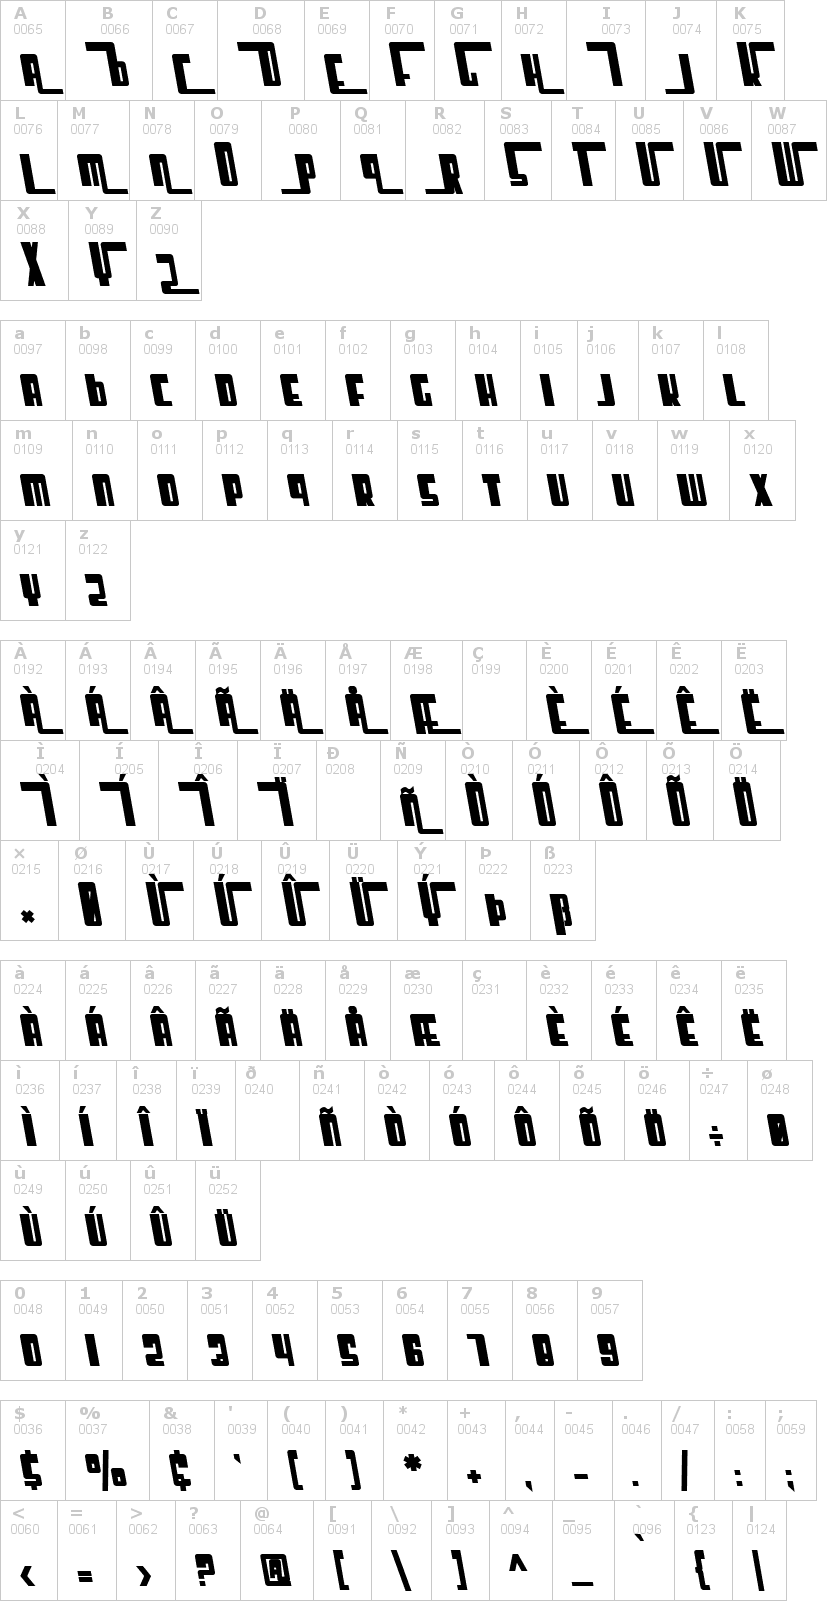 Lettere dell'alfabeto del font sf-cosmic-age con le quali è possibile realizzare adesivi prespaziati